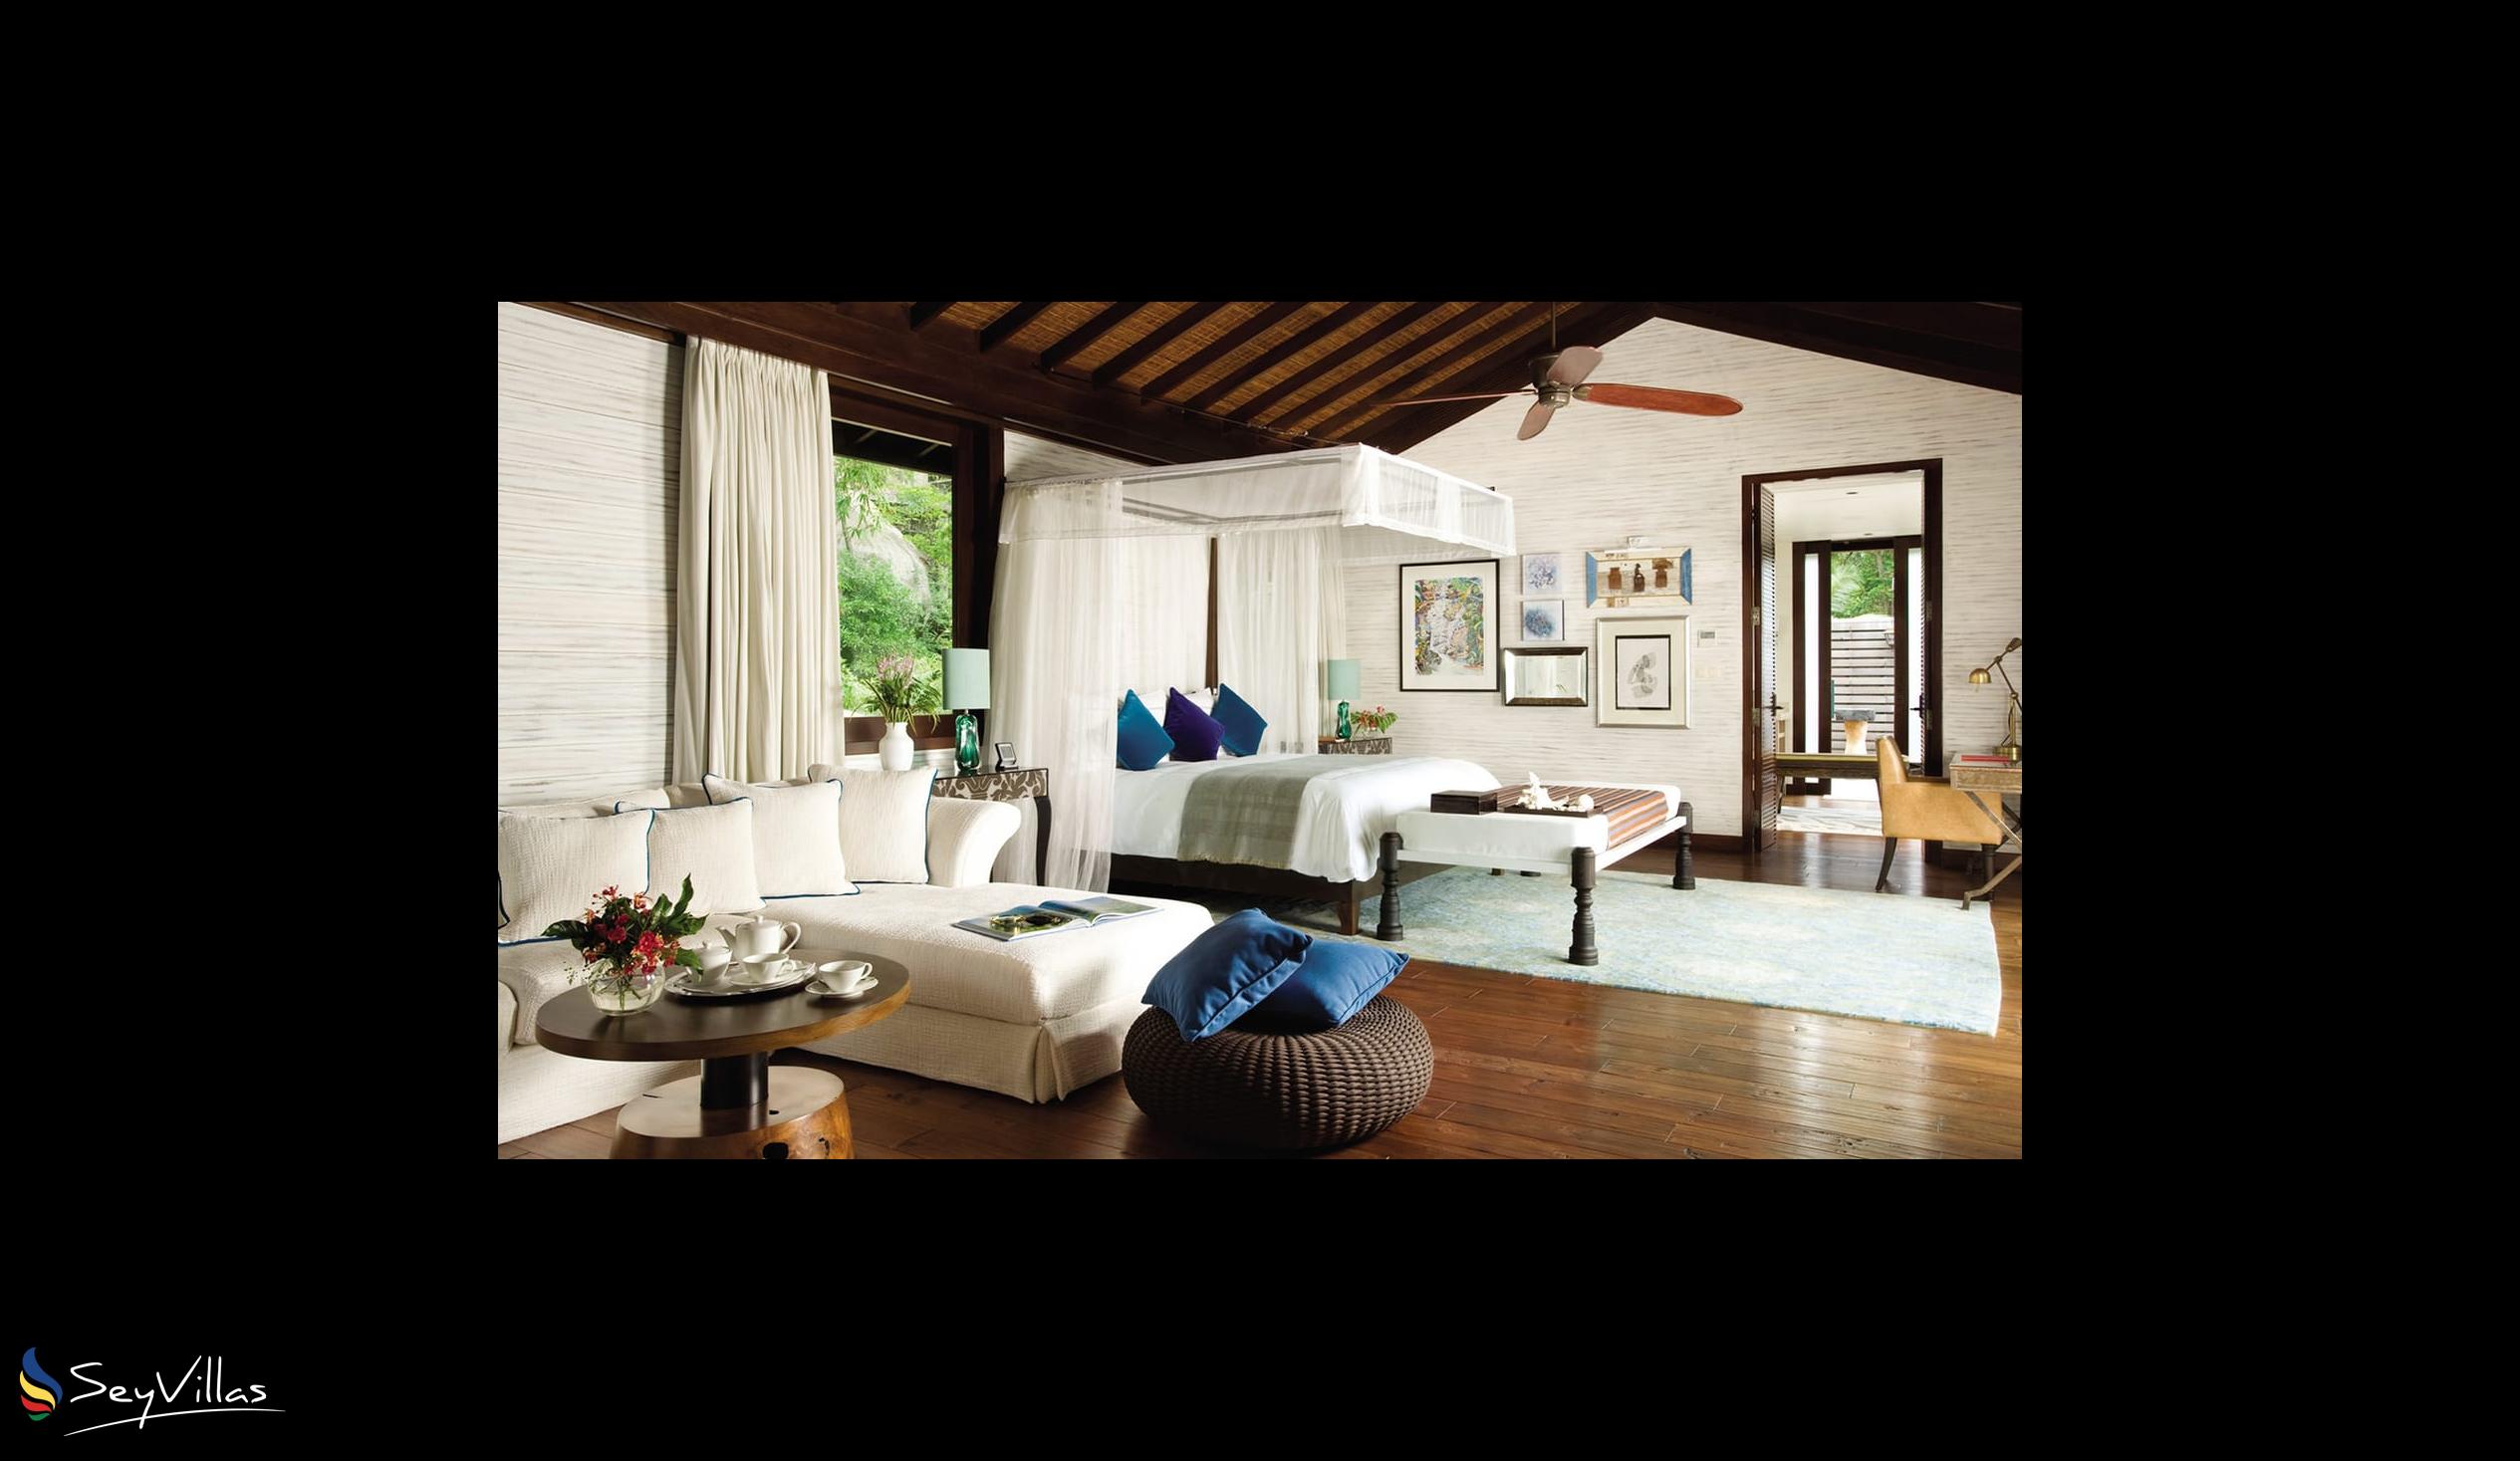 Foto 58: Four Seasons Resort - 3-Bedroom Presidential Suite - Mahé (Seychelles)